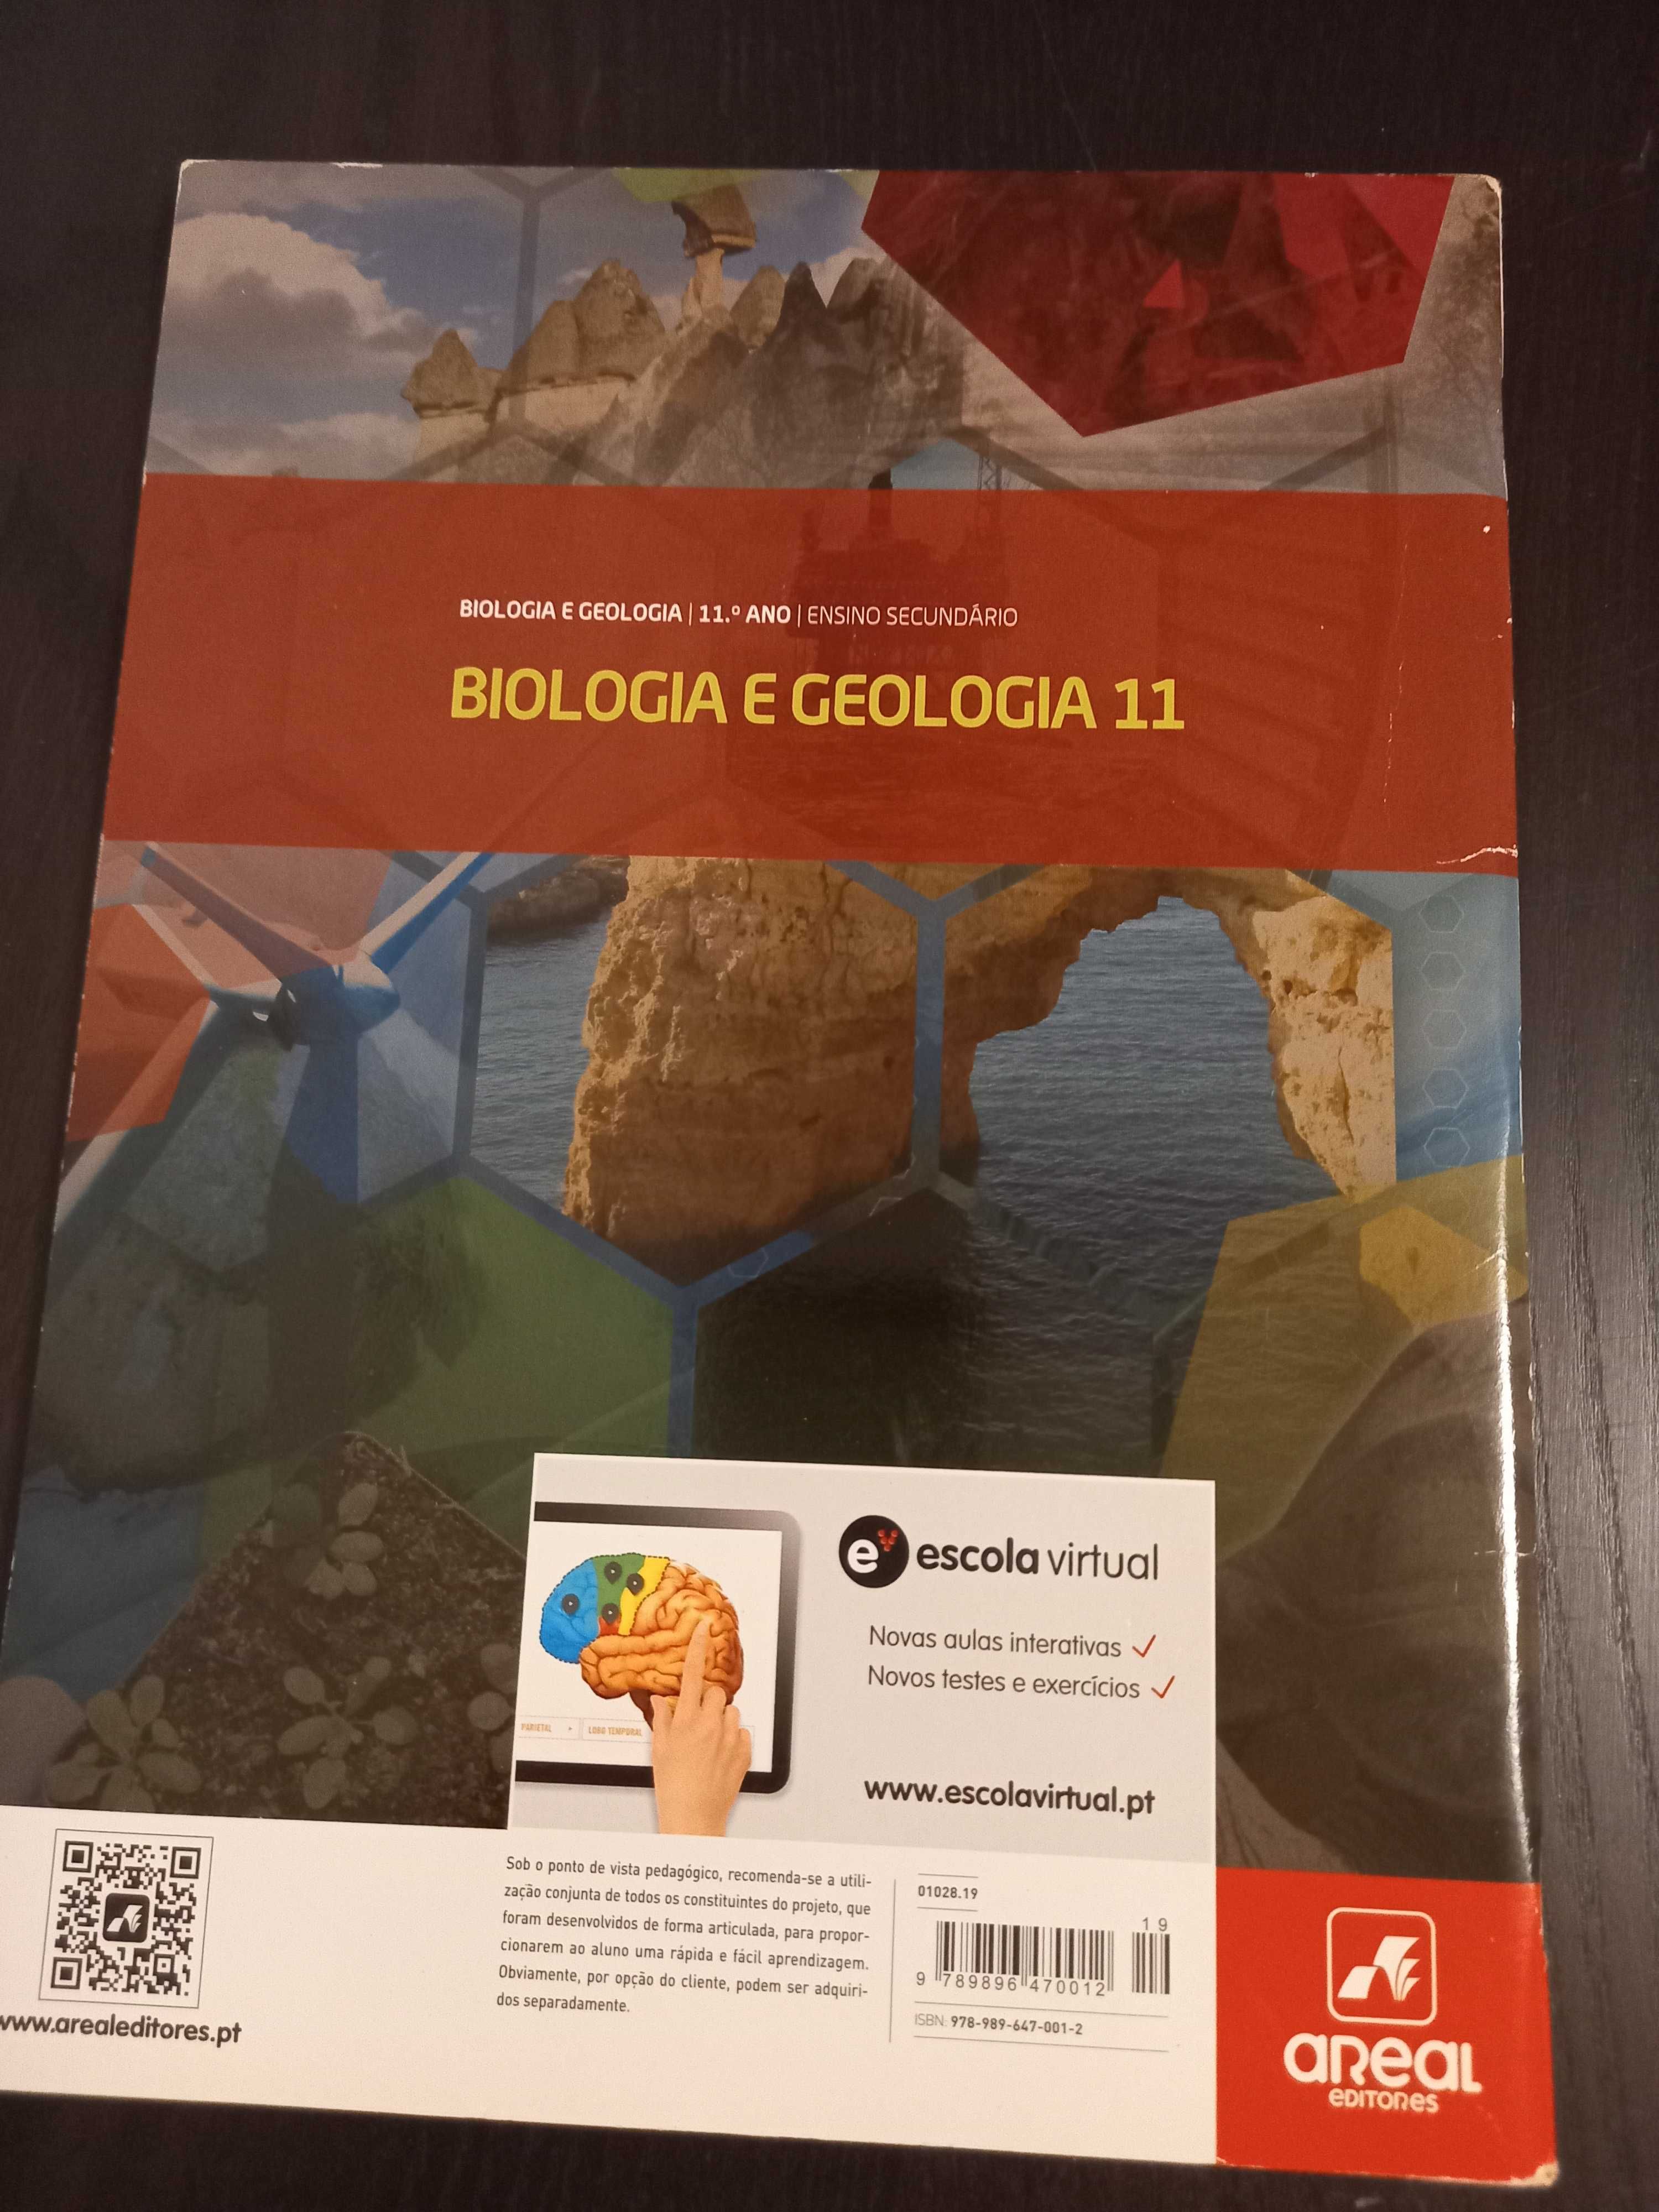 Caderno Atividades Biologia e Geologia 11 iSBN nas fotos